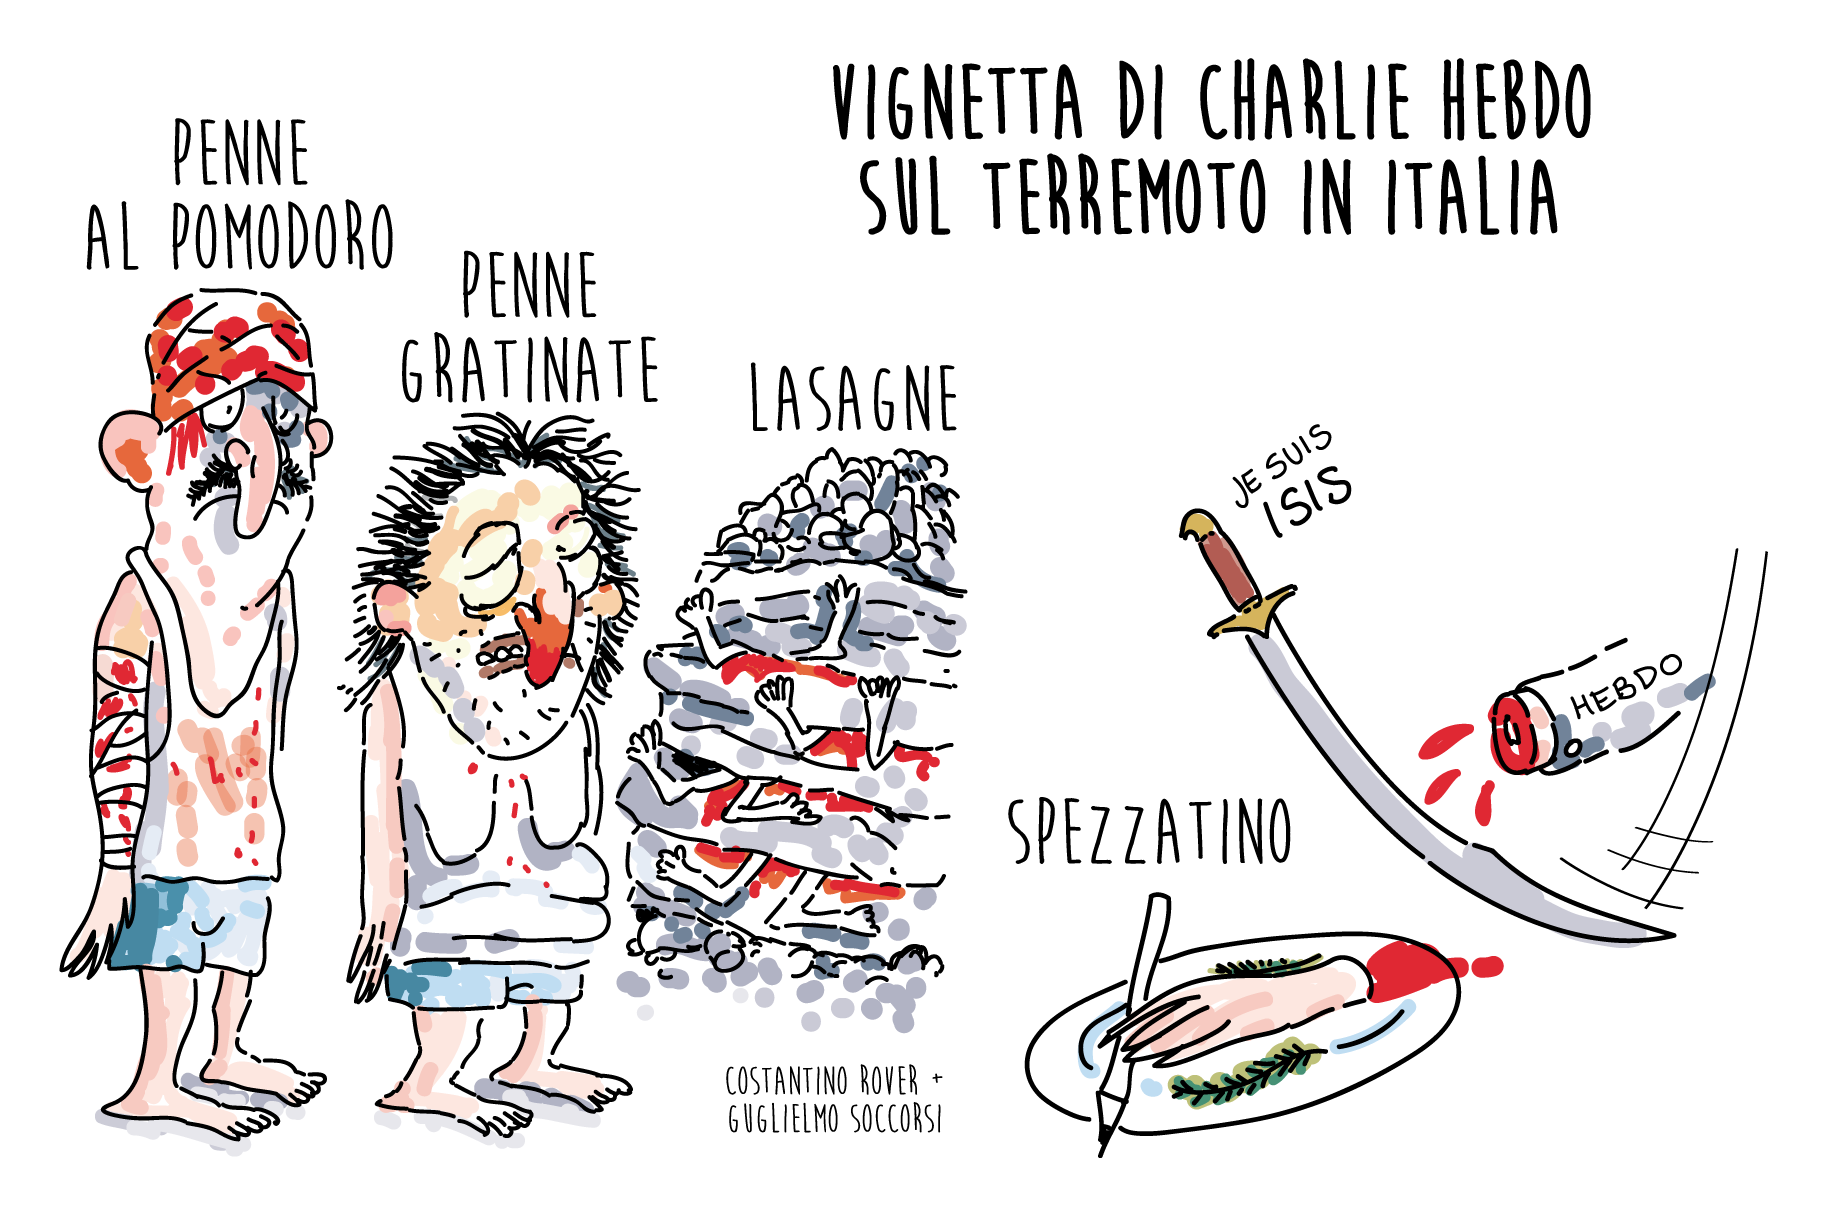 Charlie Hebdo vignetta sul terremoto in Italia